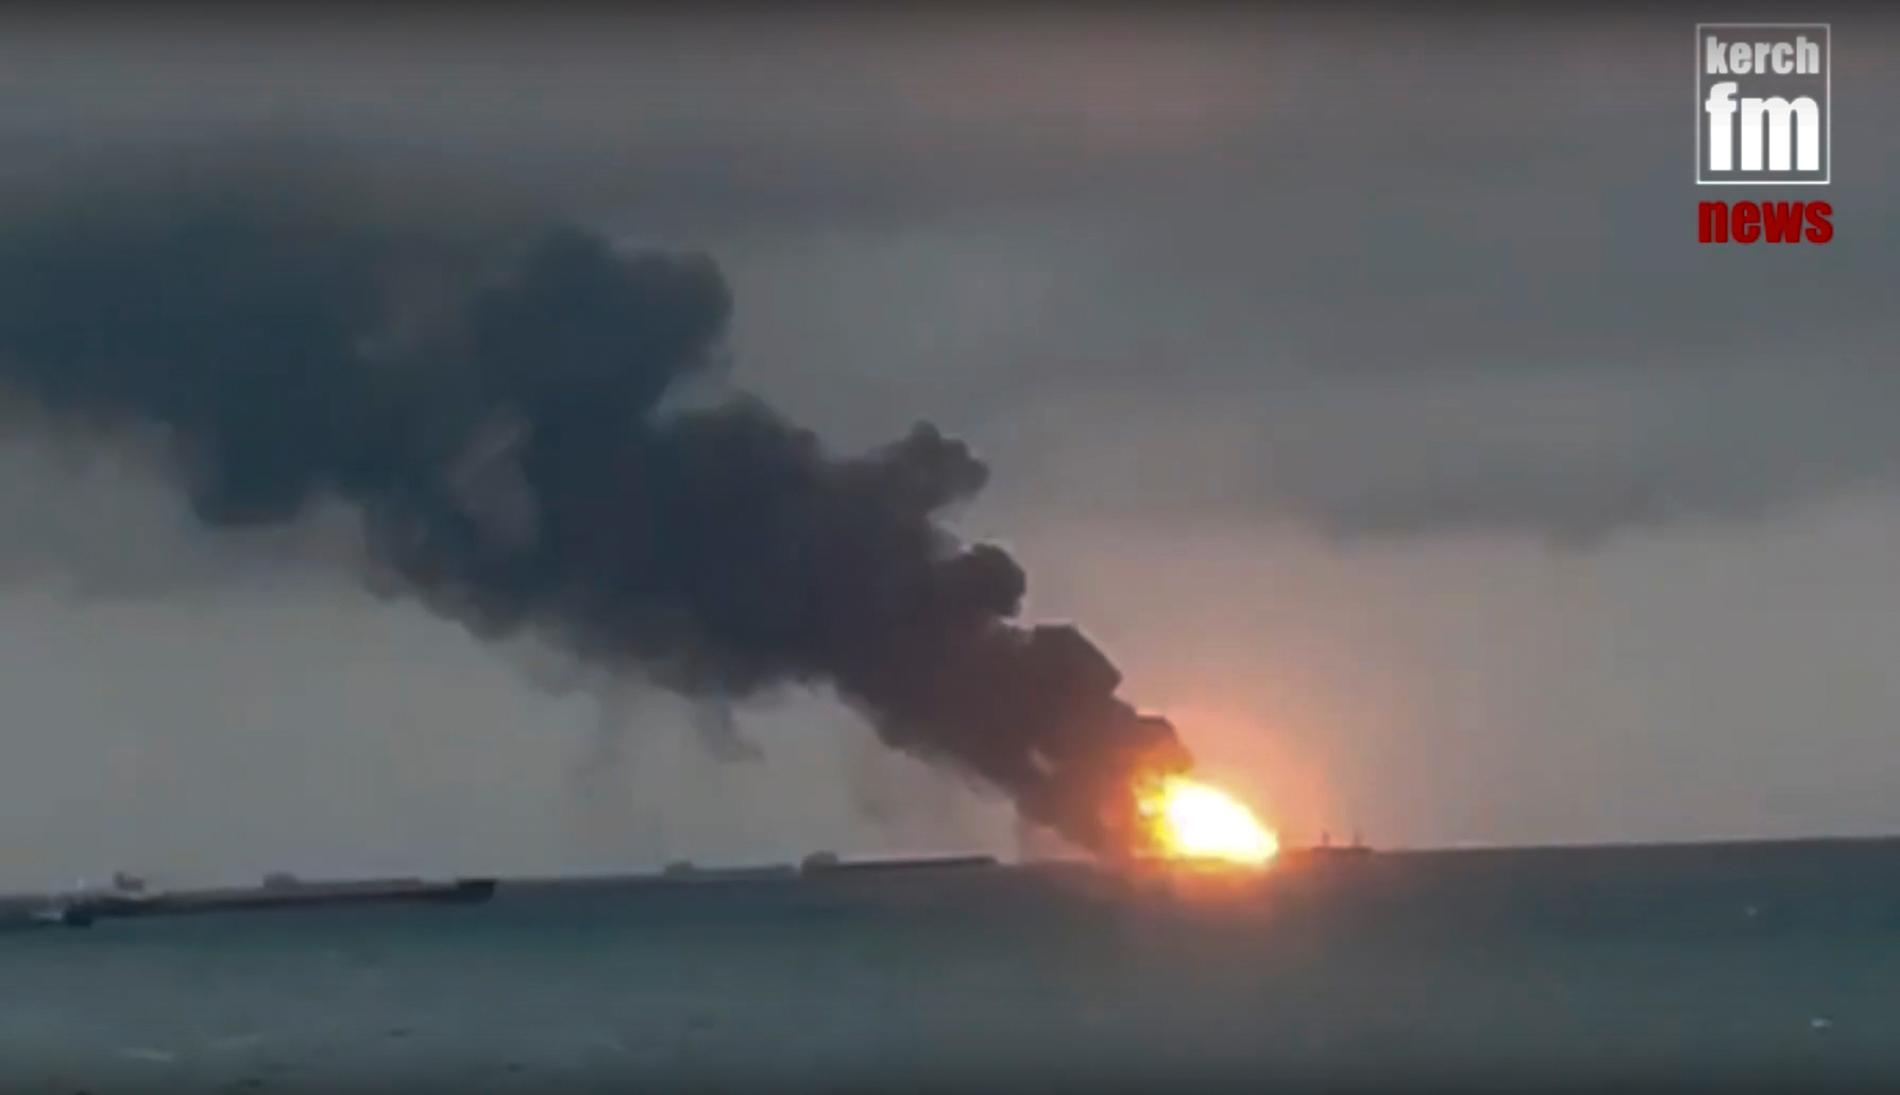 En stillbild från en video från nyhetssajten Kerch.fm visar branden på de två fartygen vid Kertjsundet på måndagen.